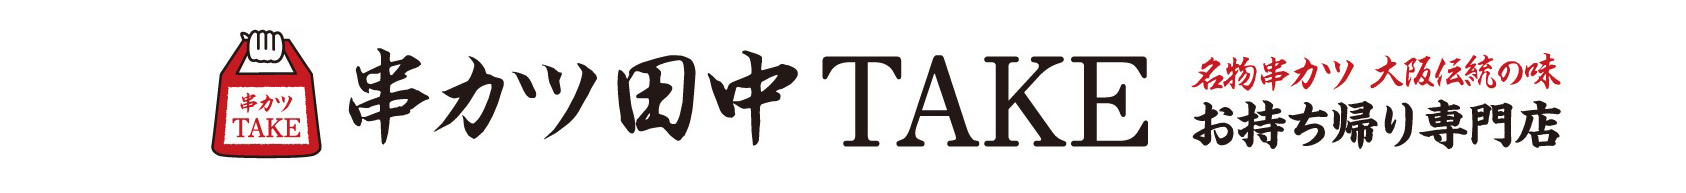 「串カツ田中」テイクアウト専門店『串カツ田中TAKE』ロゴ